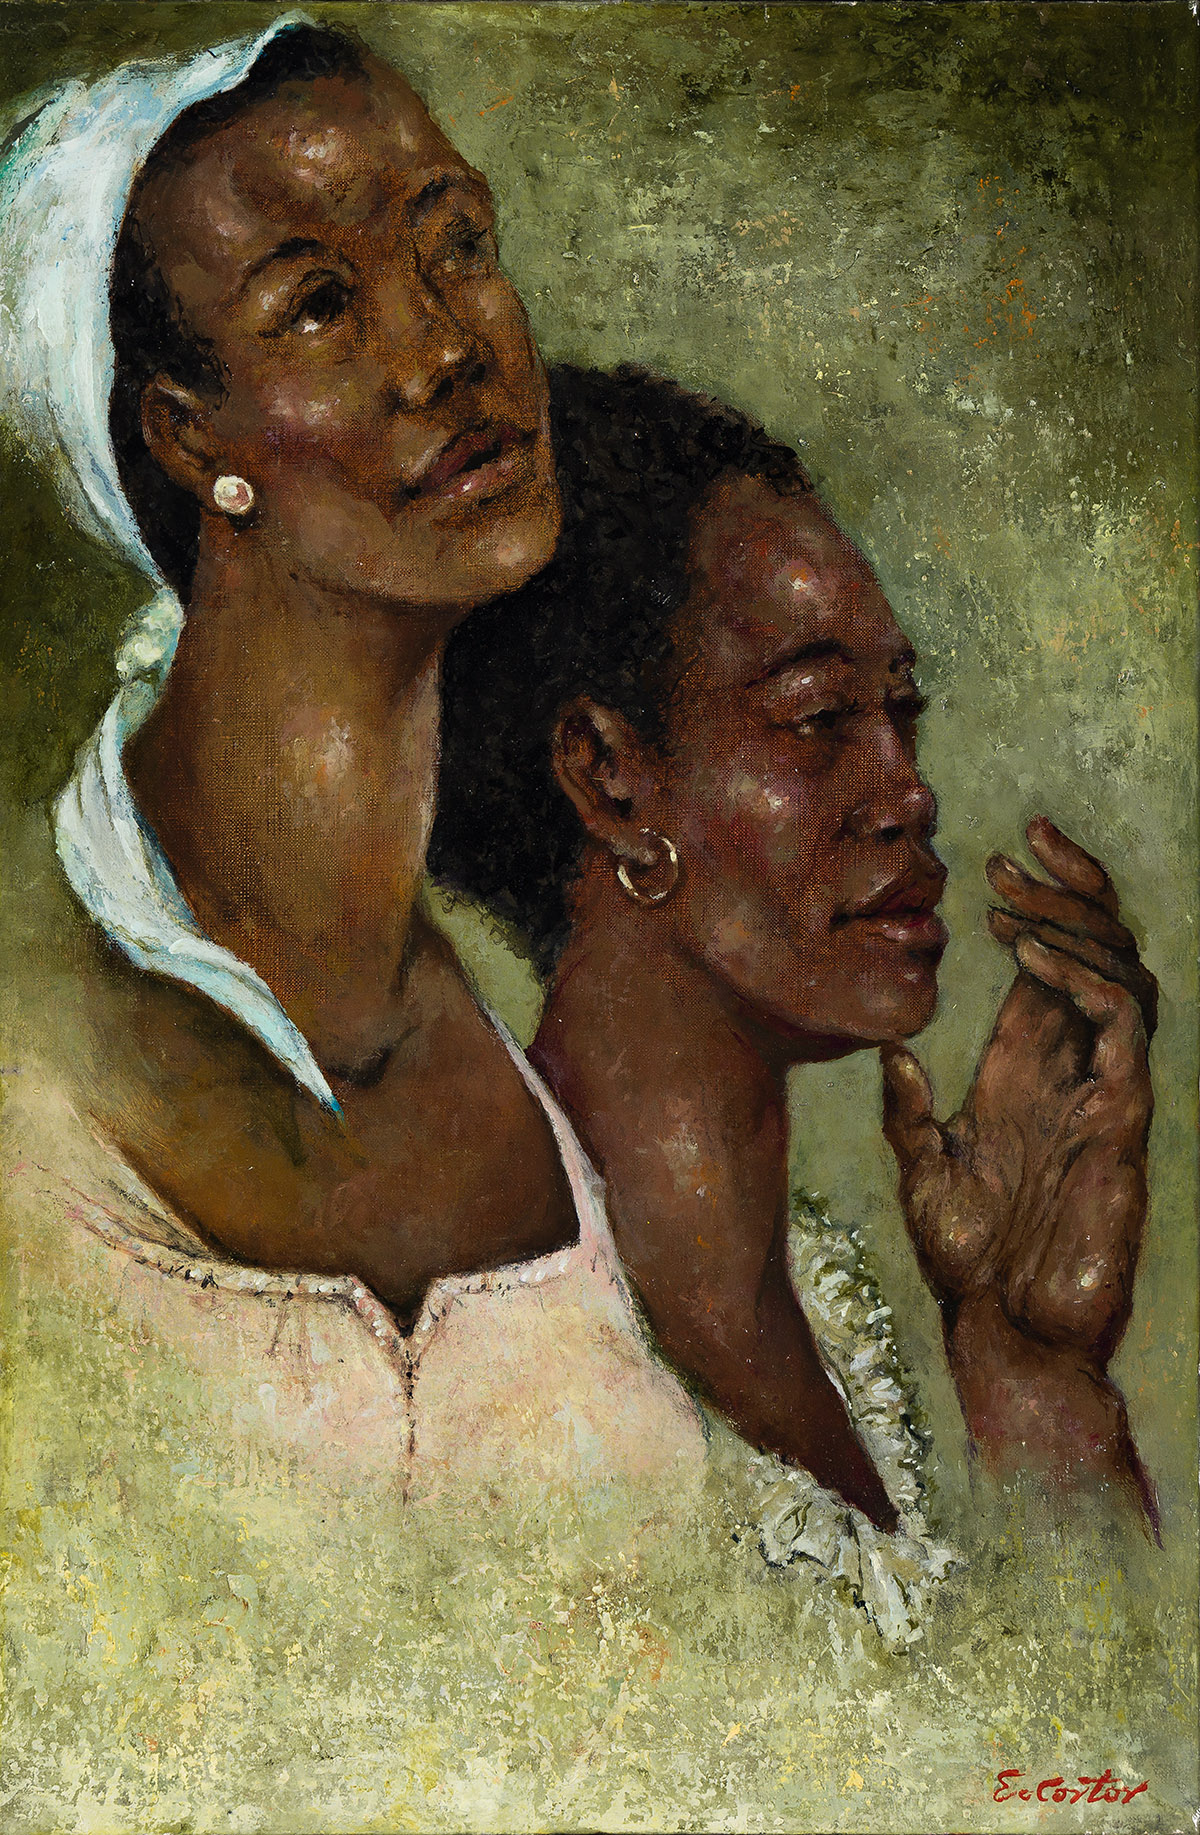 ELDZIER CORTOR (1916 - 2015) Two Women with Earrings.